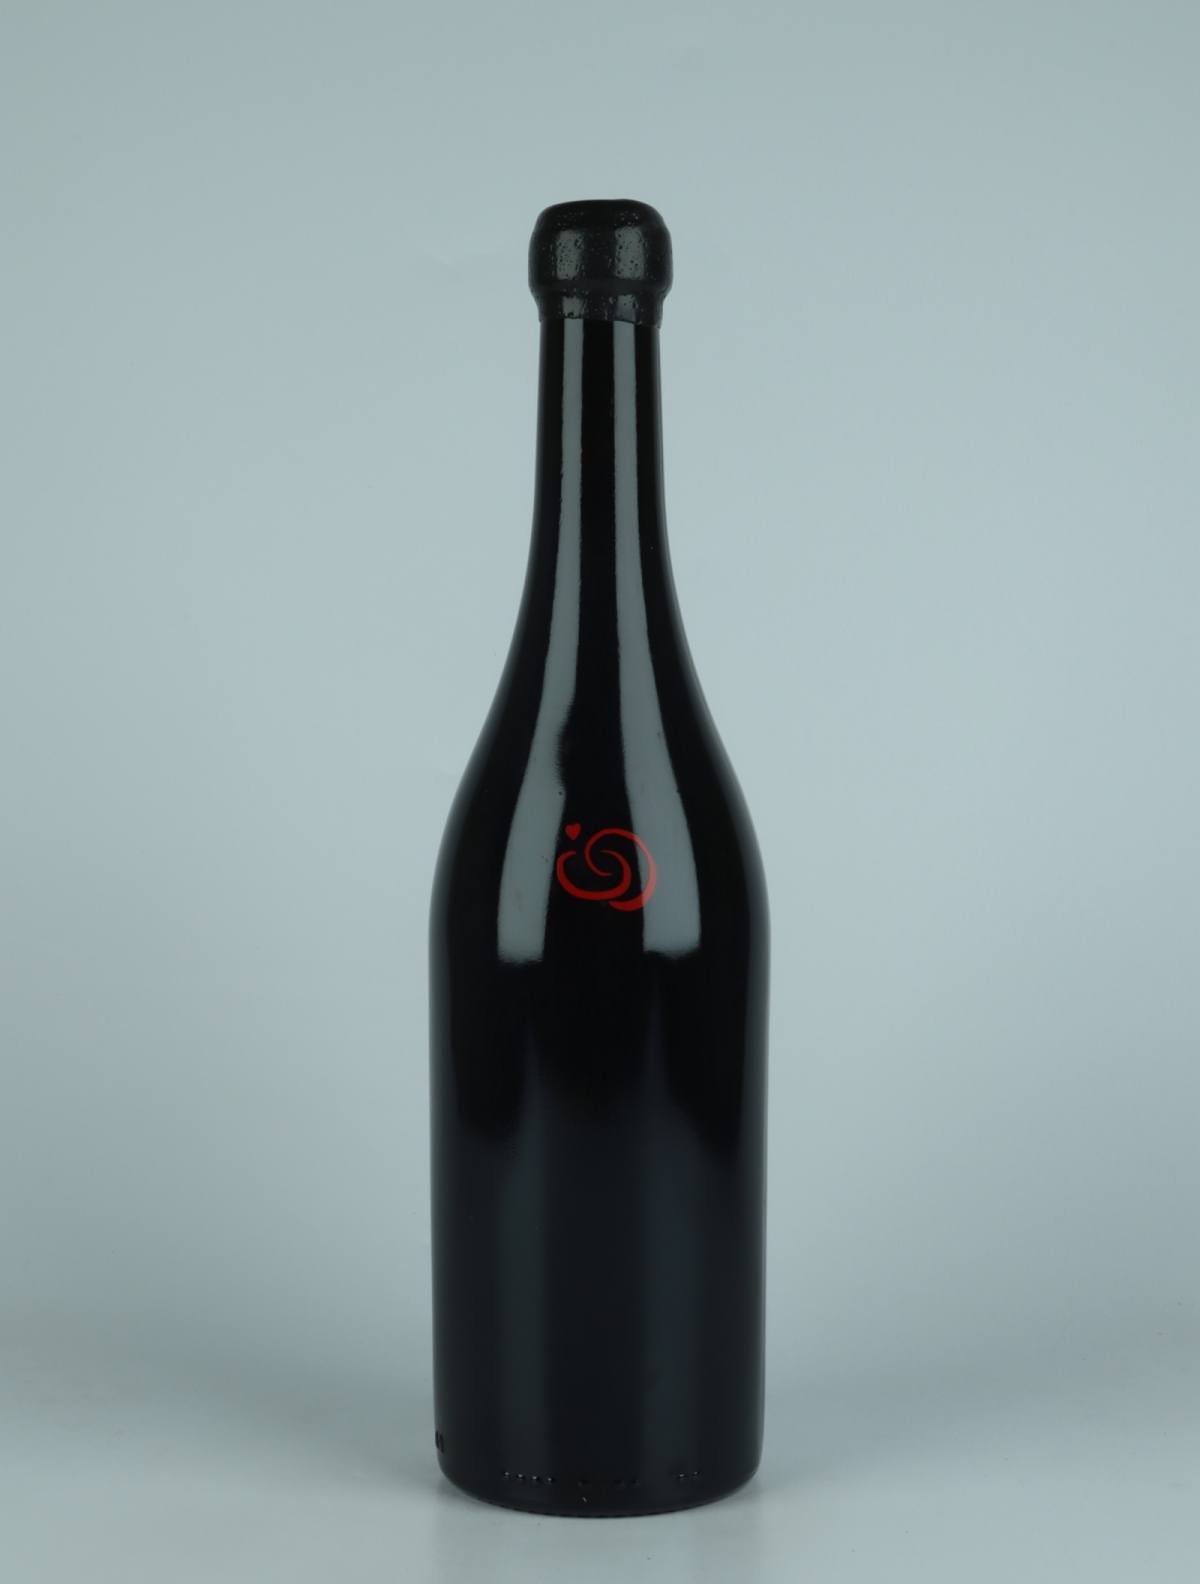 A bottle 2020 Vi Negre Red wine from Els Jelipins, Penedès in Spain